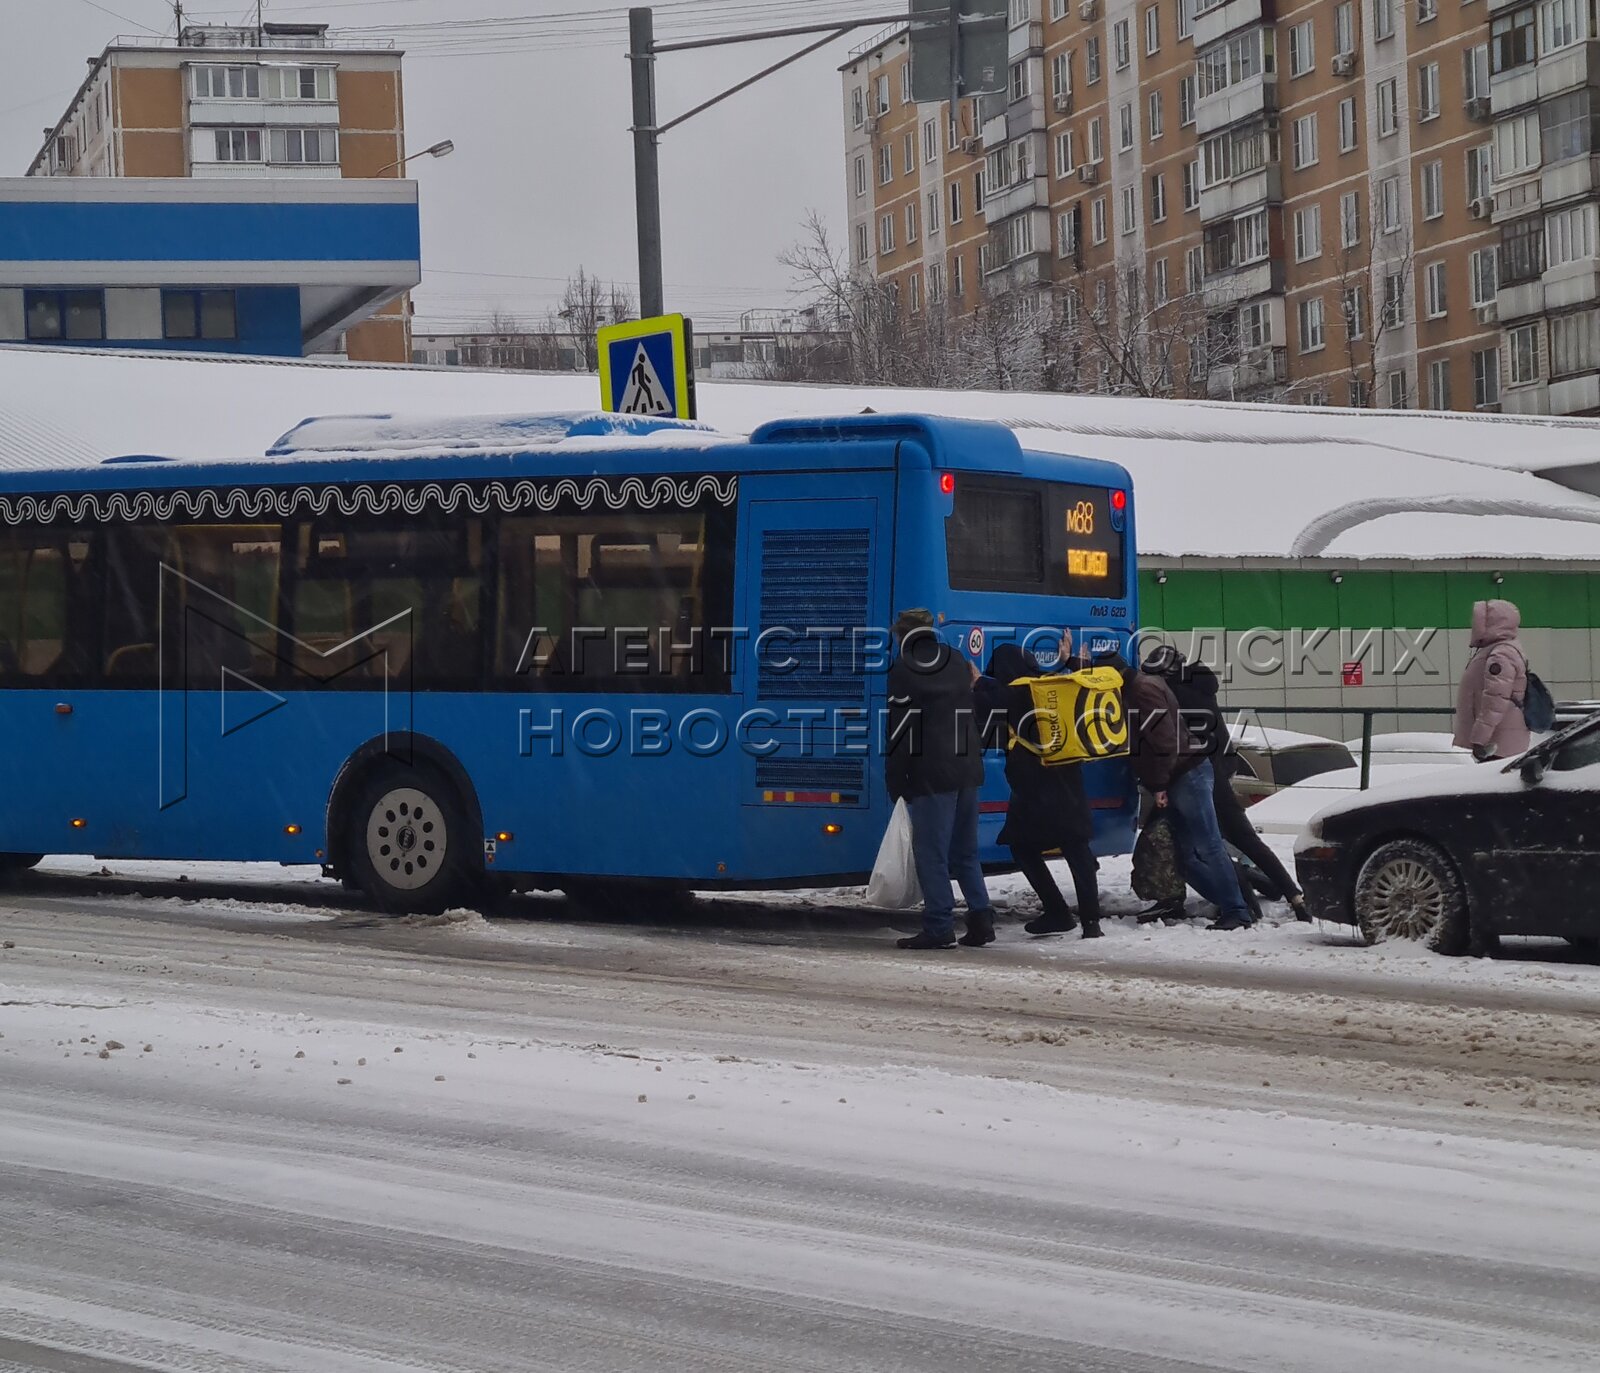 Расписание автобуса 921 бирюлево западное царицыно. КОПТЯЩИЙ автобус. Петербурге пассажиры толкали троллейбус.